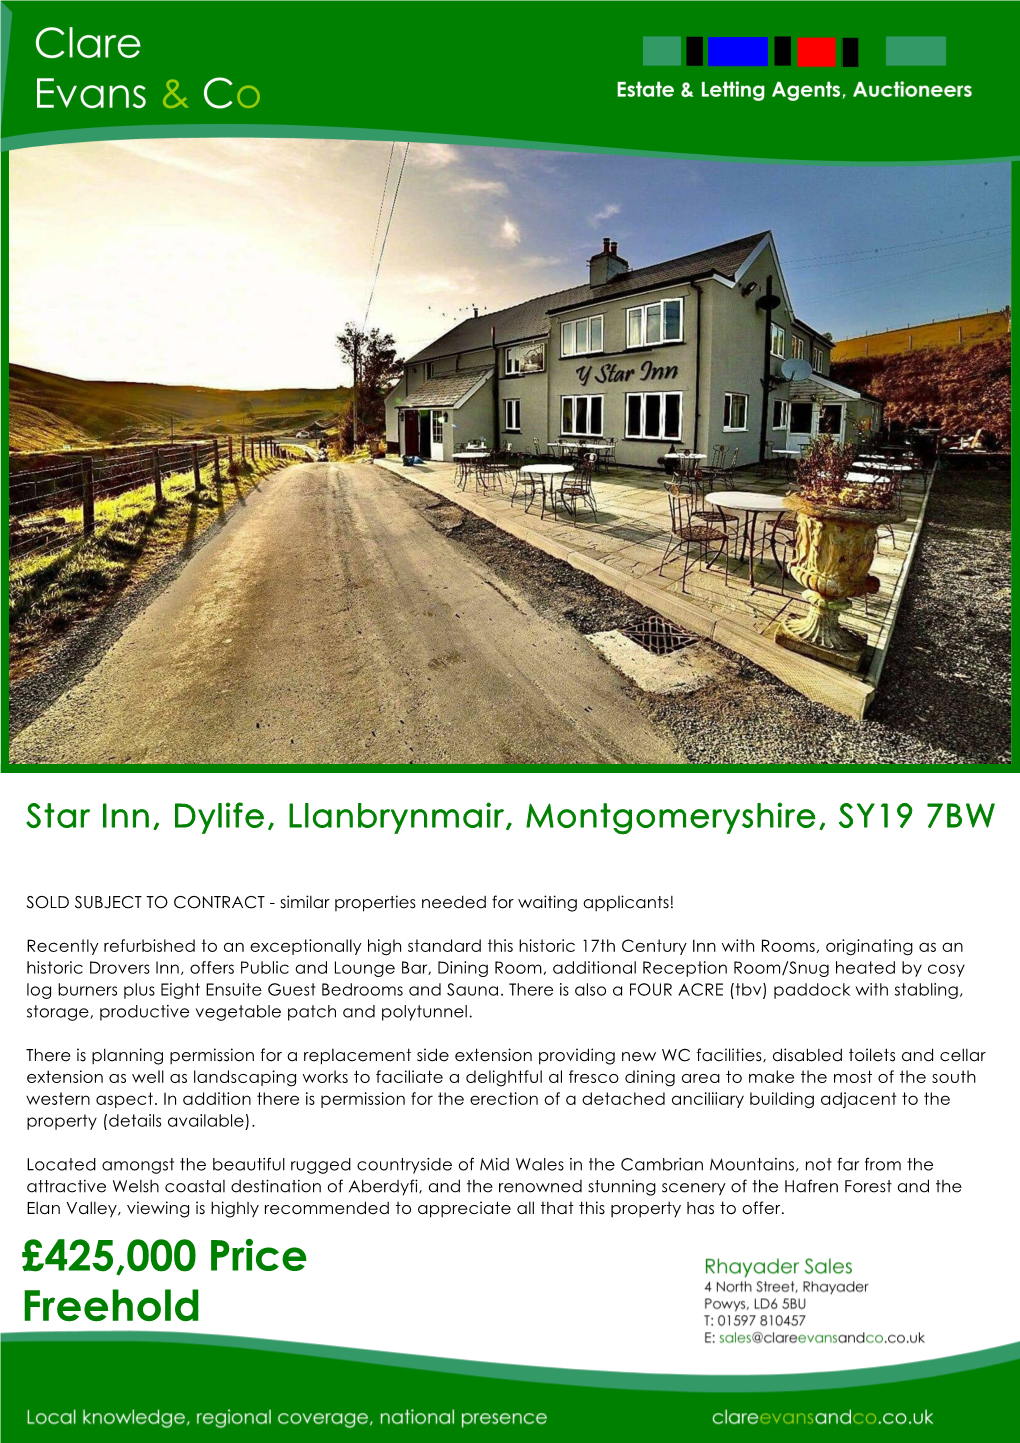 Dylife, Llanbrynmair, Montgomeryshire, SY19 7BW